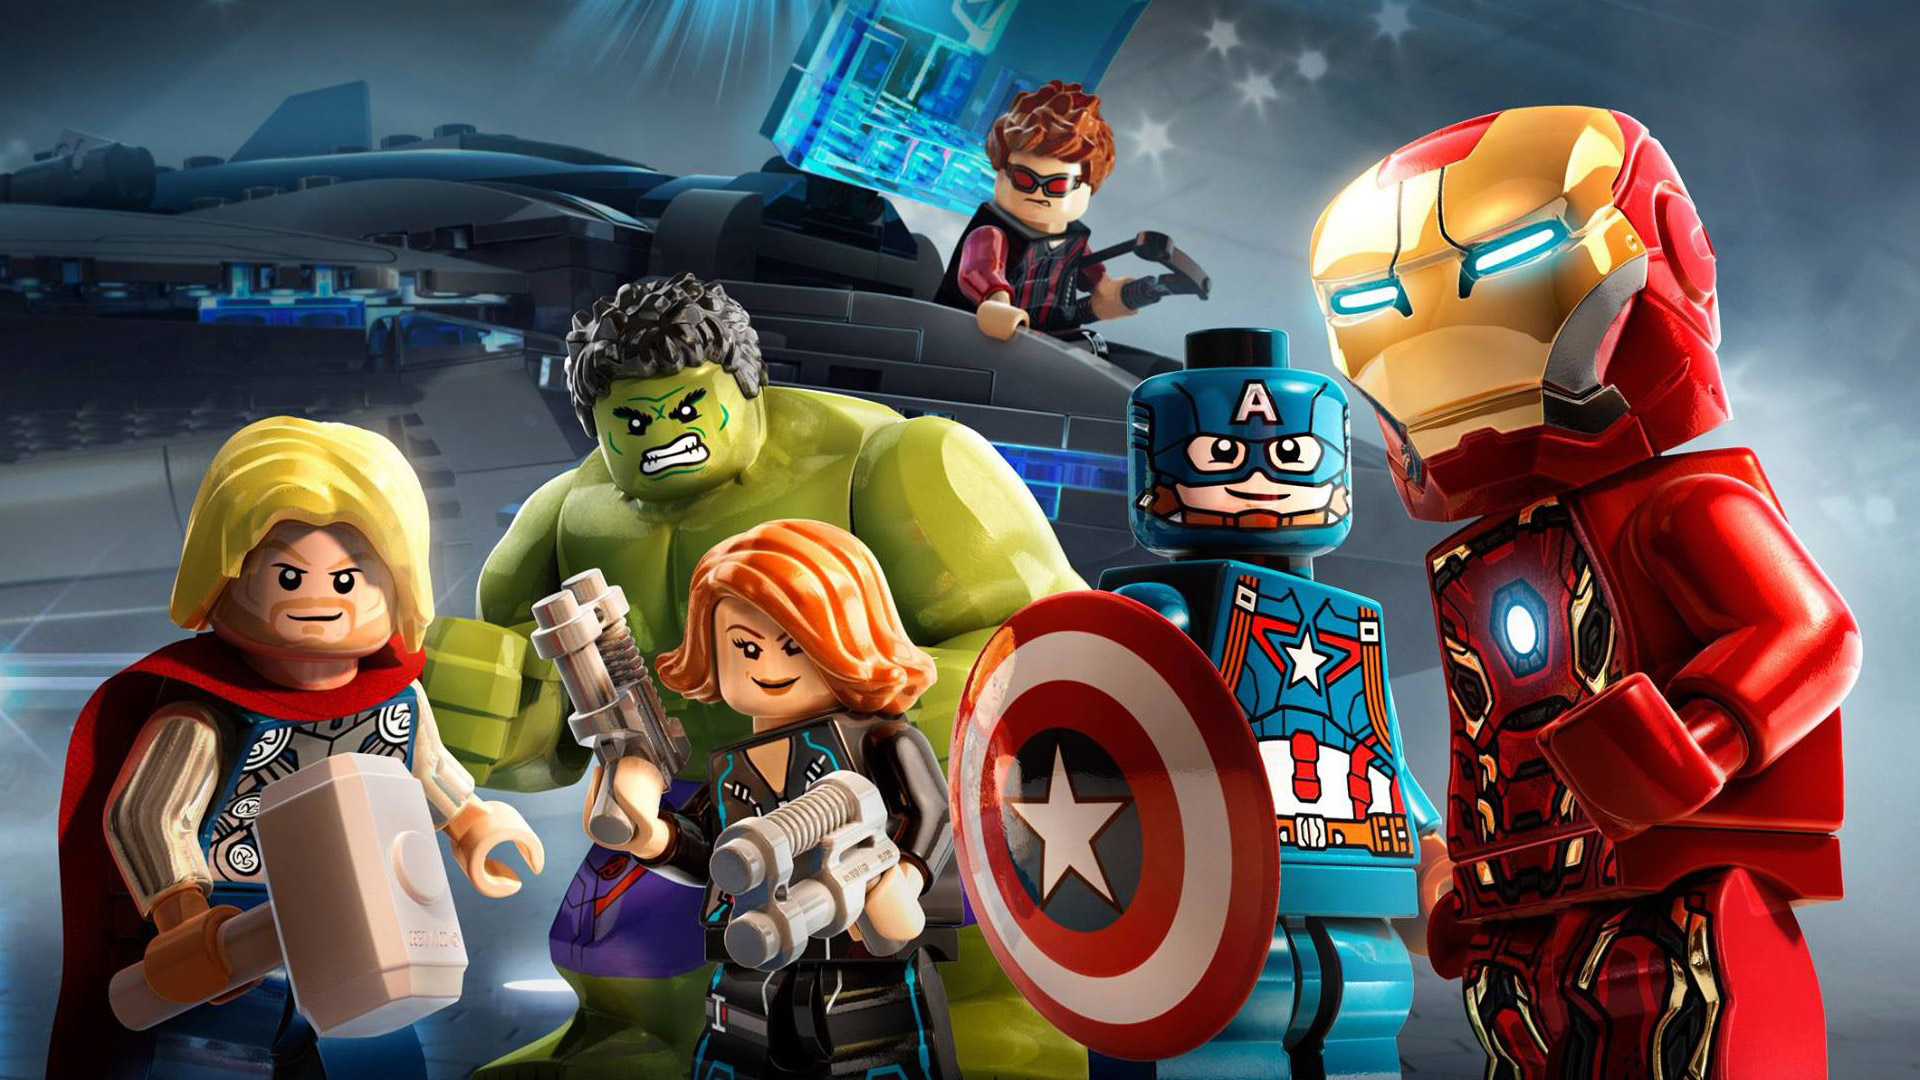 Melhores papéis de parede de Lego Marvel's Avengers para tela do telefone